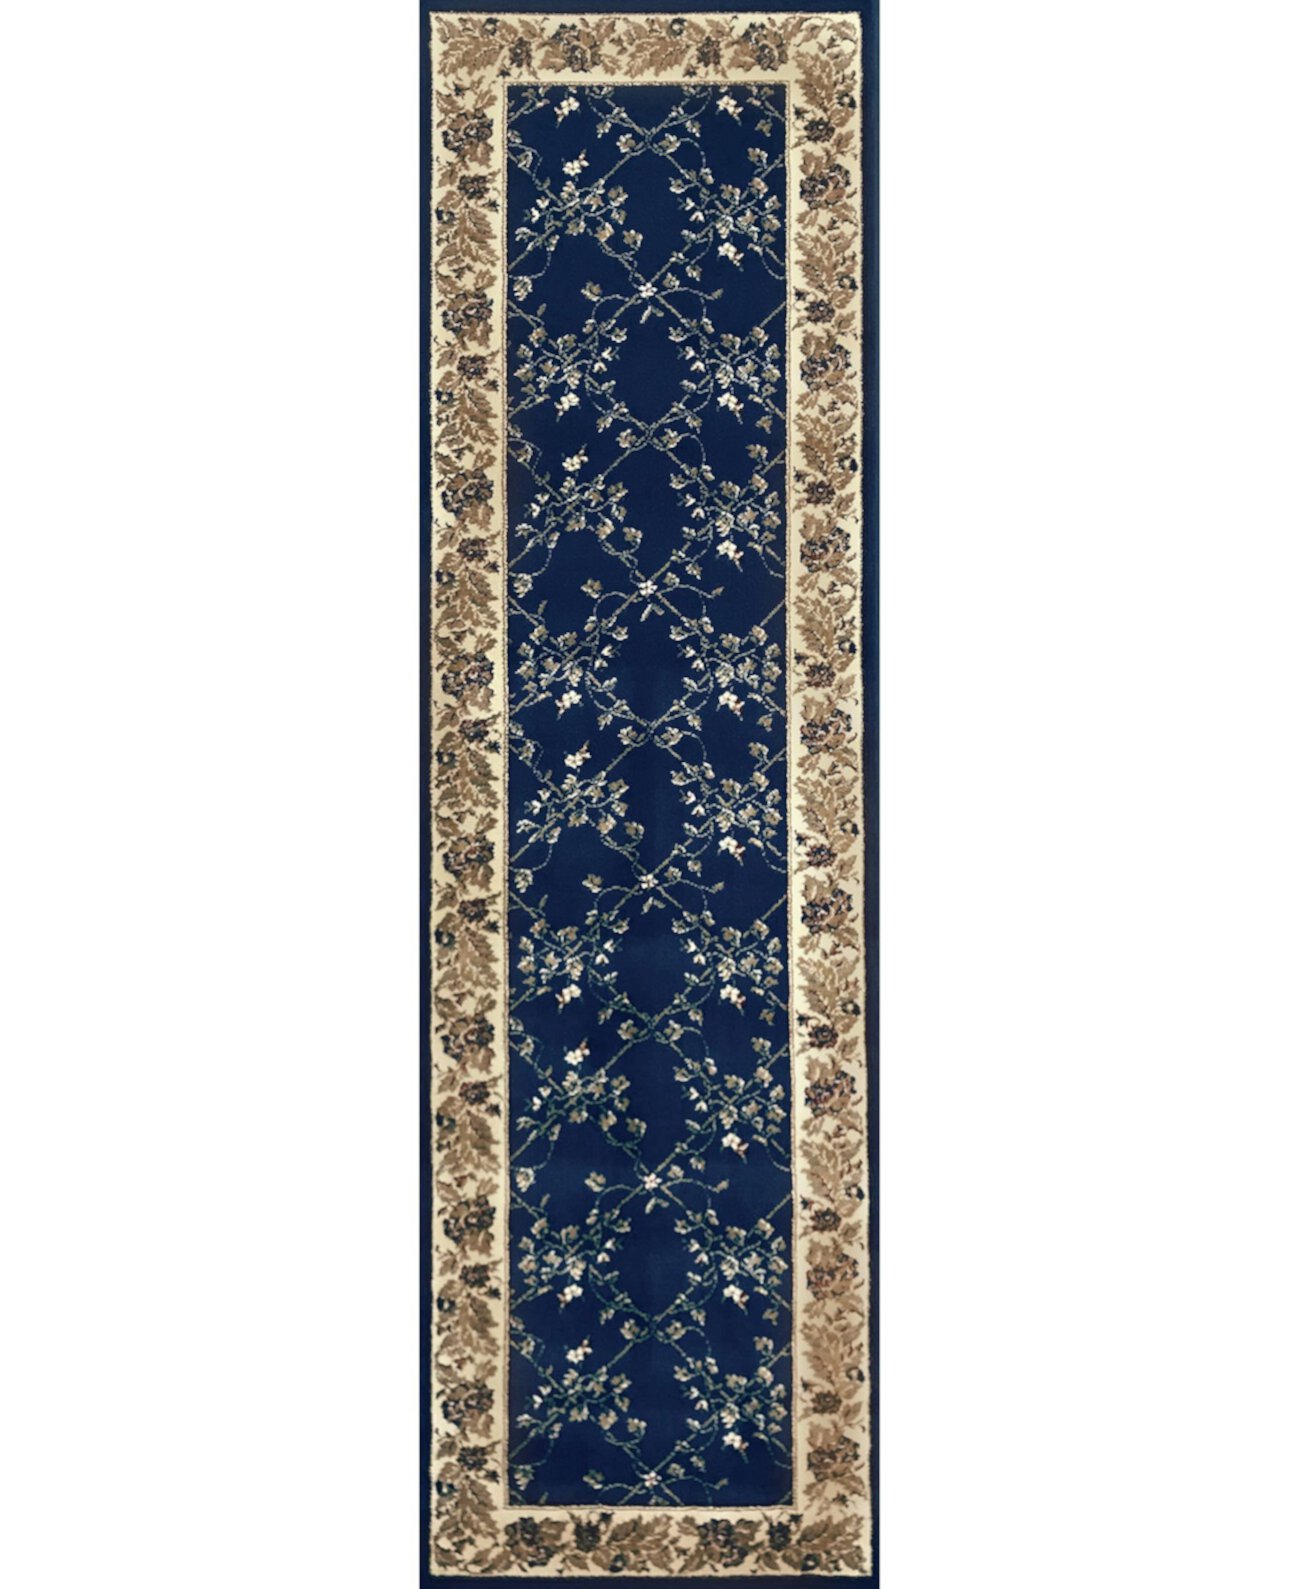 ЗАКРЫТИЕ! 1590/4004/NAVY Pesaro Синий коврик размером 2 фута 2 x 7 футов 7 дюймов KM Home